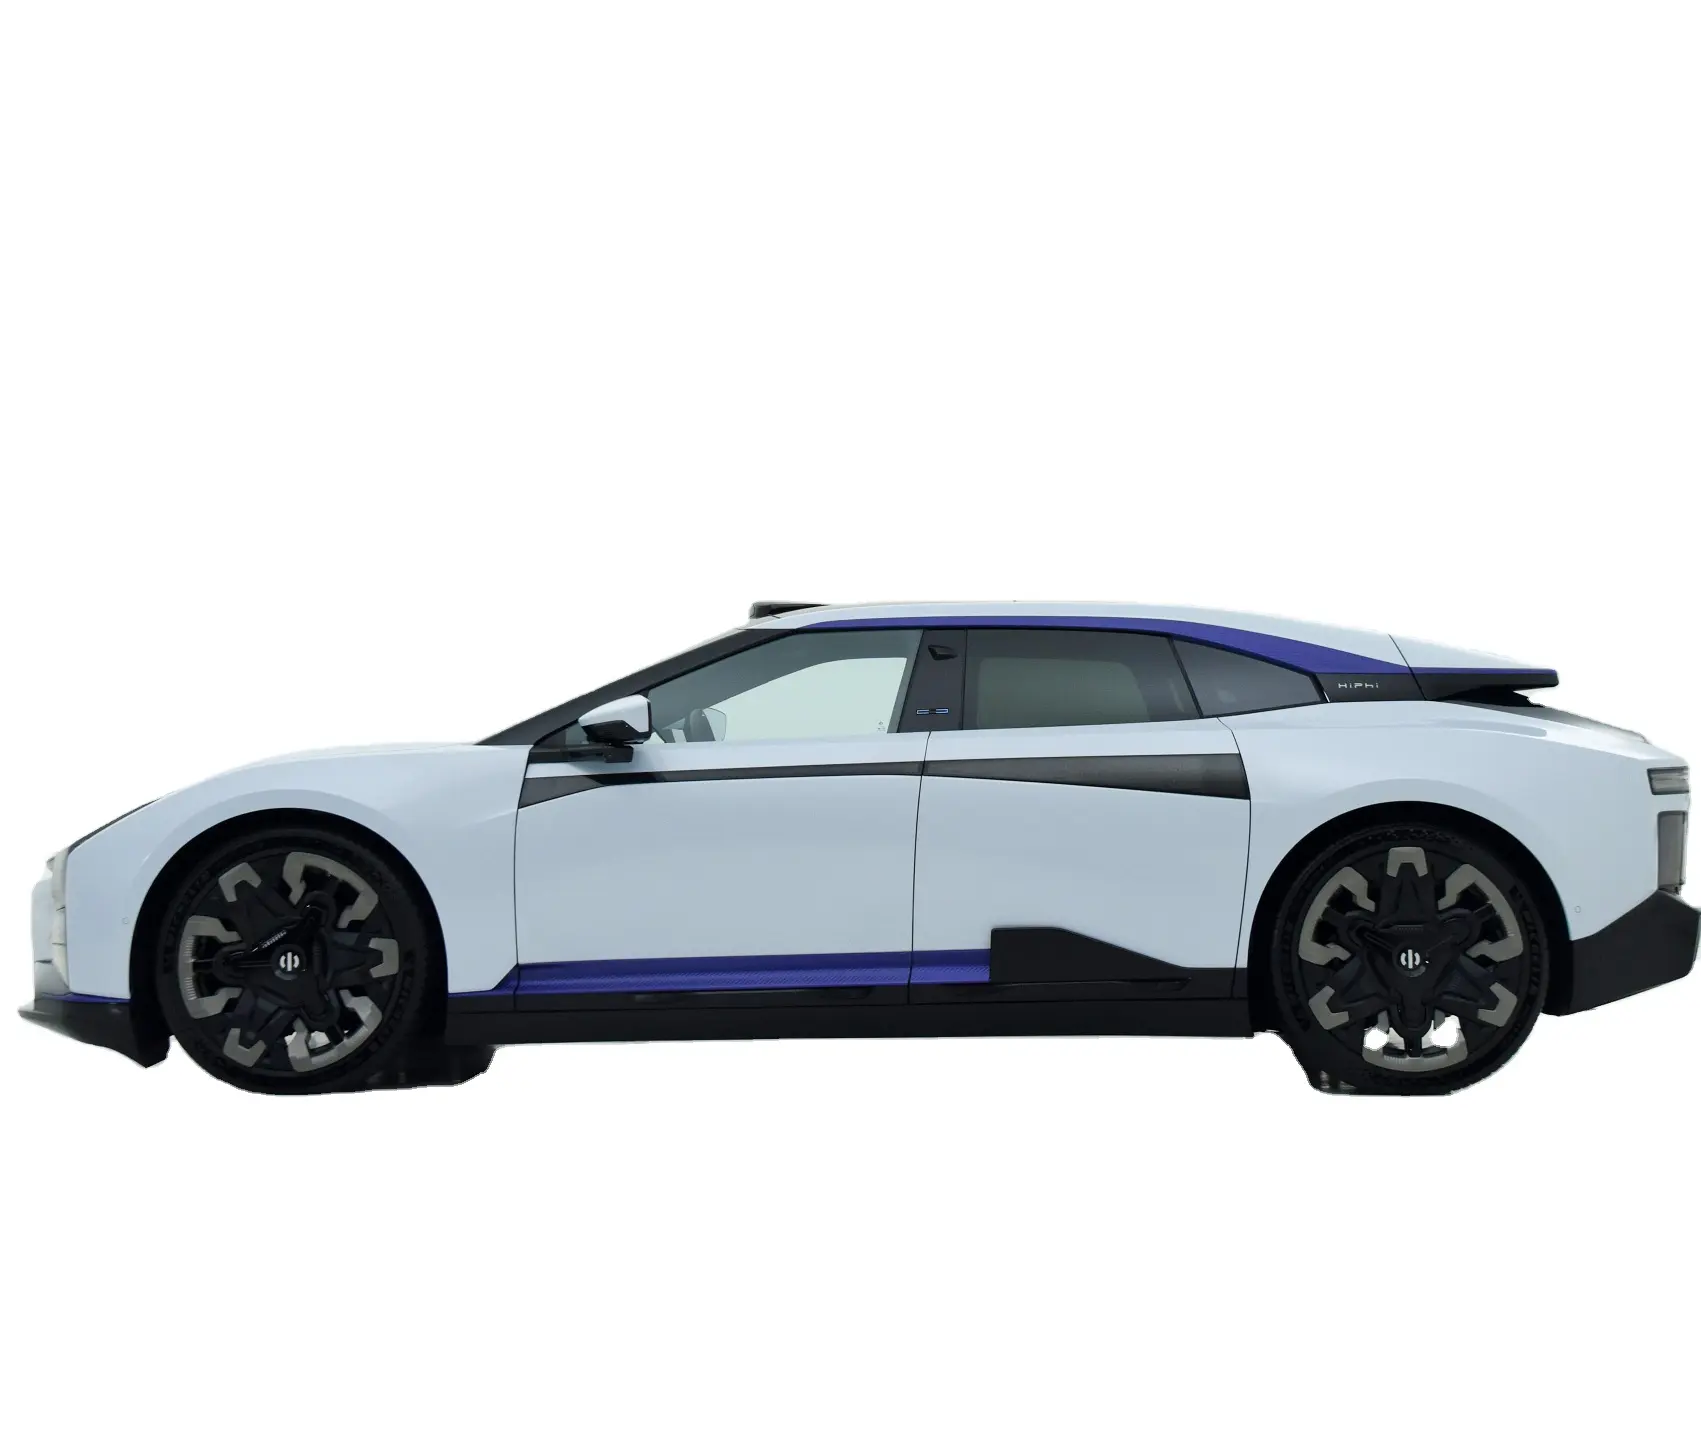 Mobil 2023 Ev daya tahan 705km Hiphi Z 4 kursi motor ganda kecepatan maks 200km/jam 4wd mobil listrik murni Hiphi X mobil listrik Sedan baru